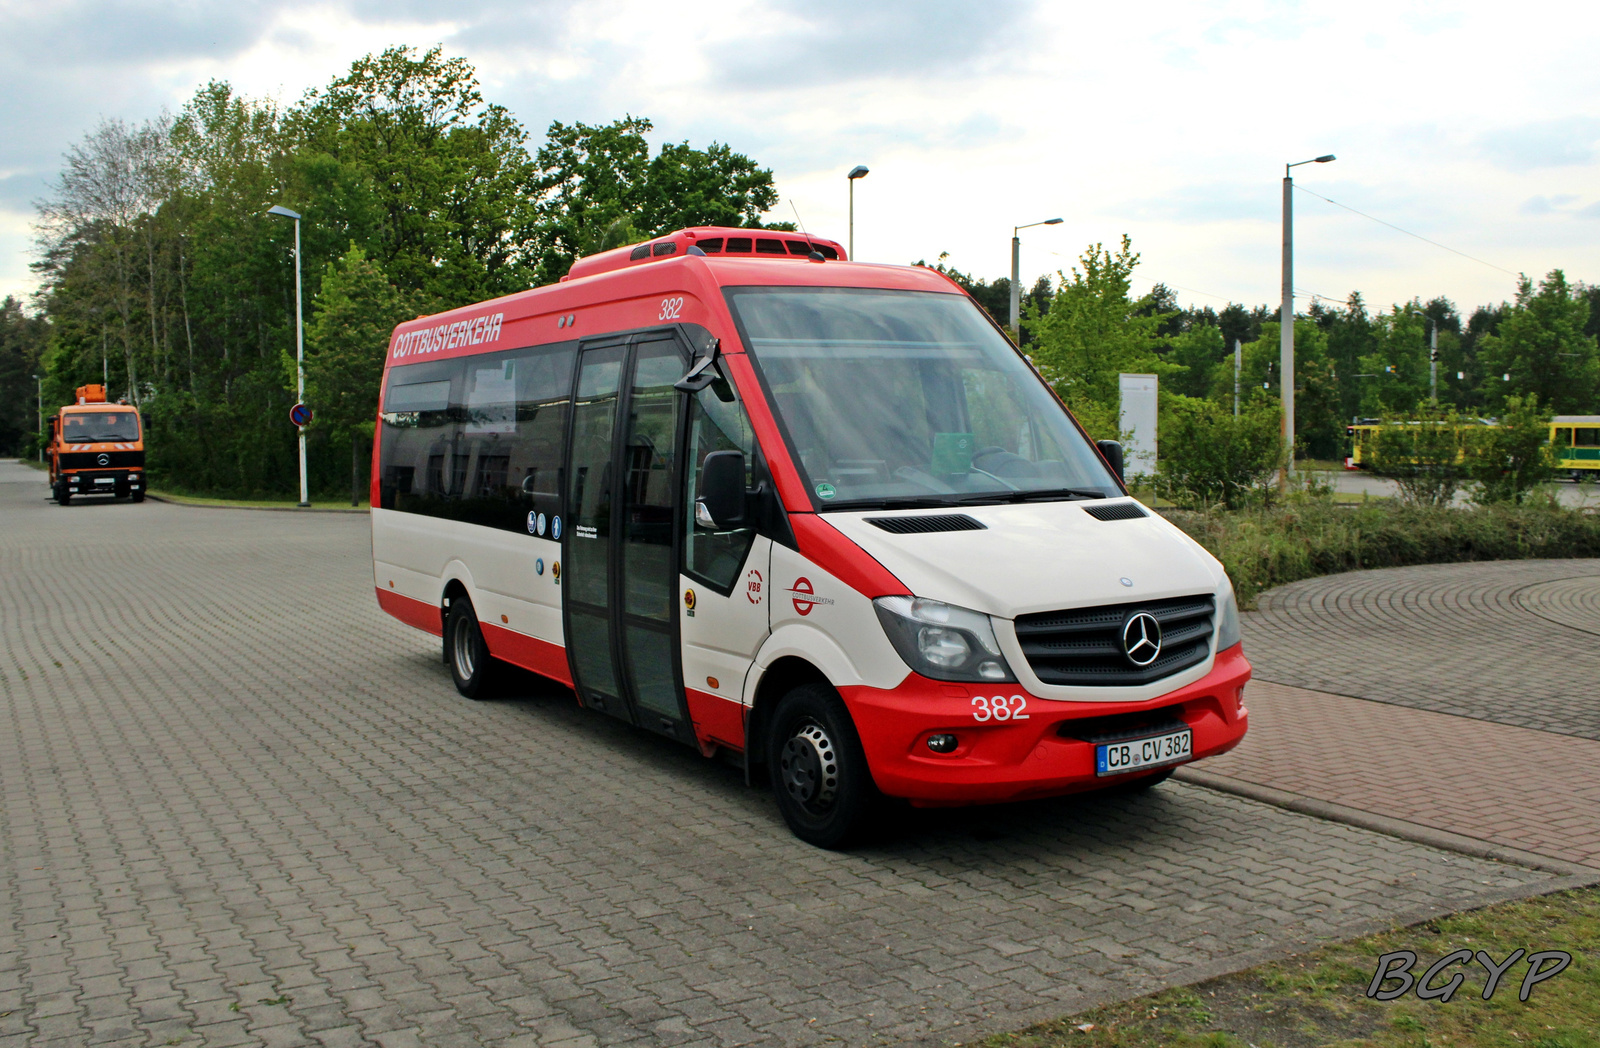 Mercedes-Benz Sprinter (CB-CV 382)